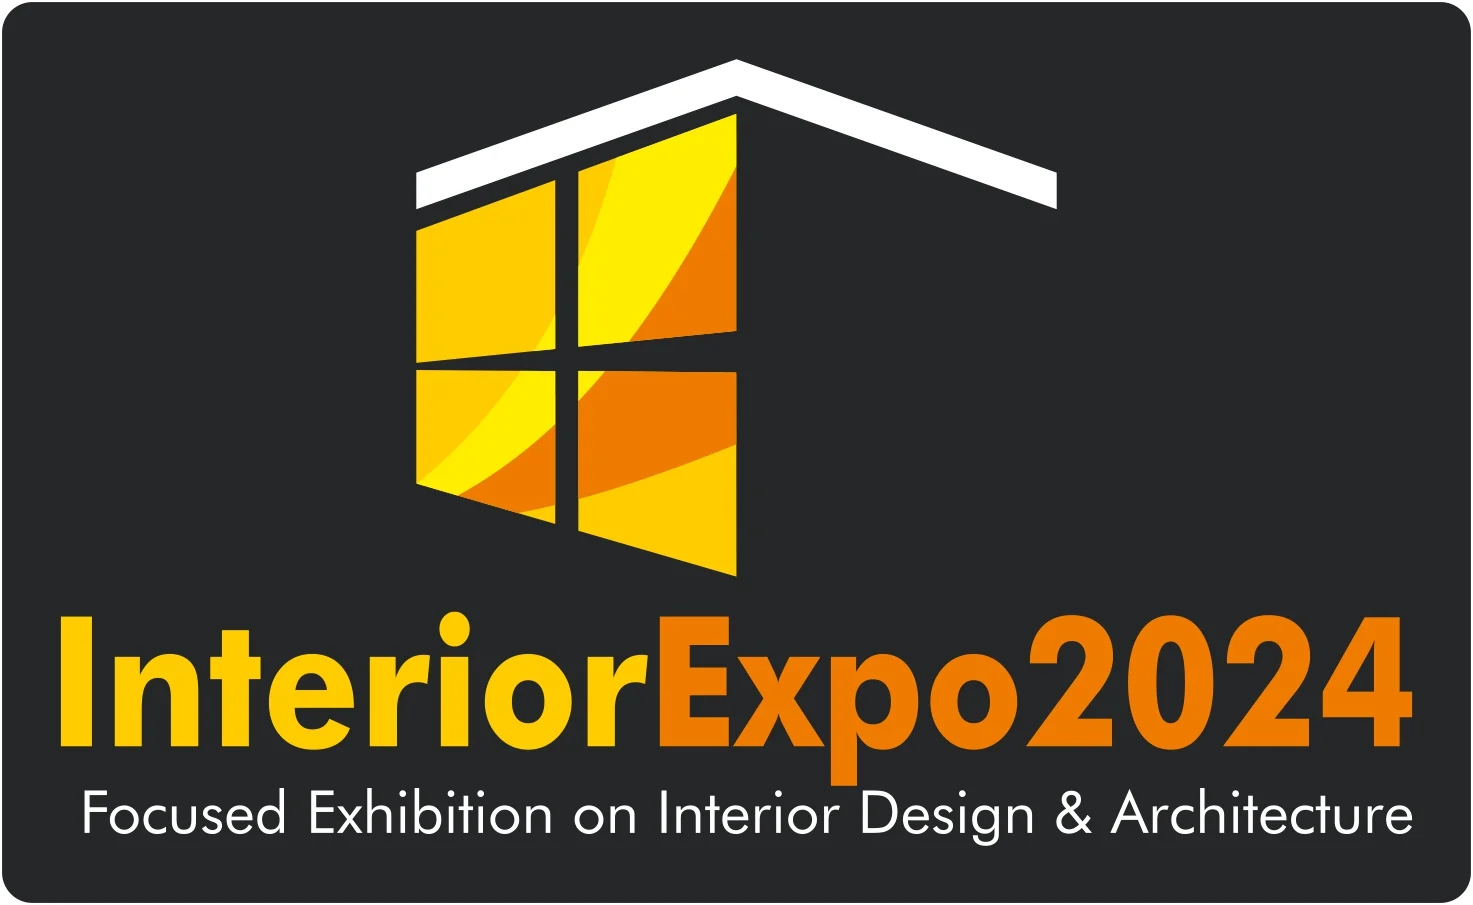 The Interior Expo 2024